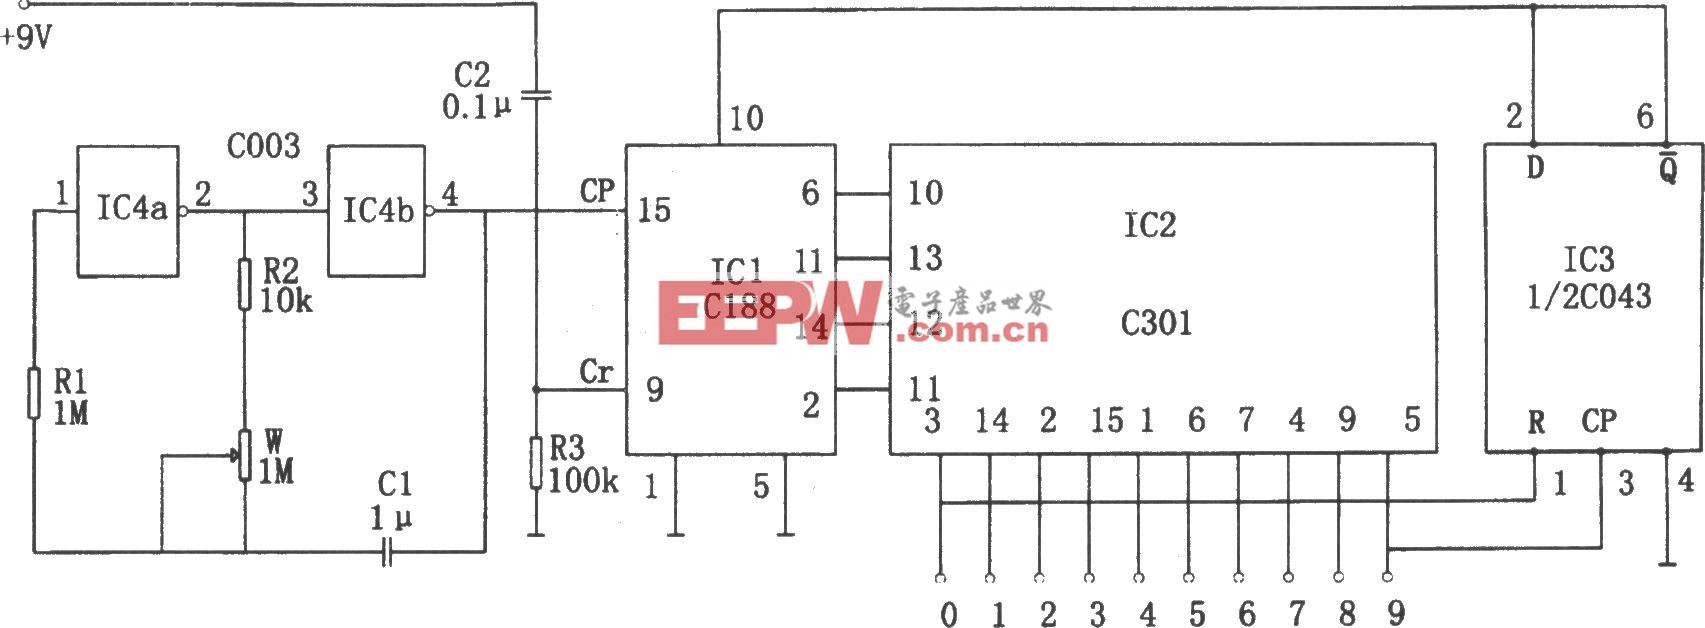 可逆式流水彩灯控制器(C043、C301、C188、C003)